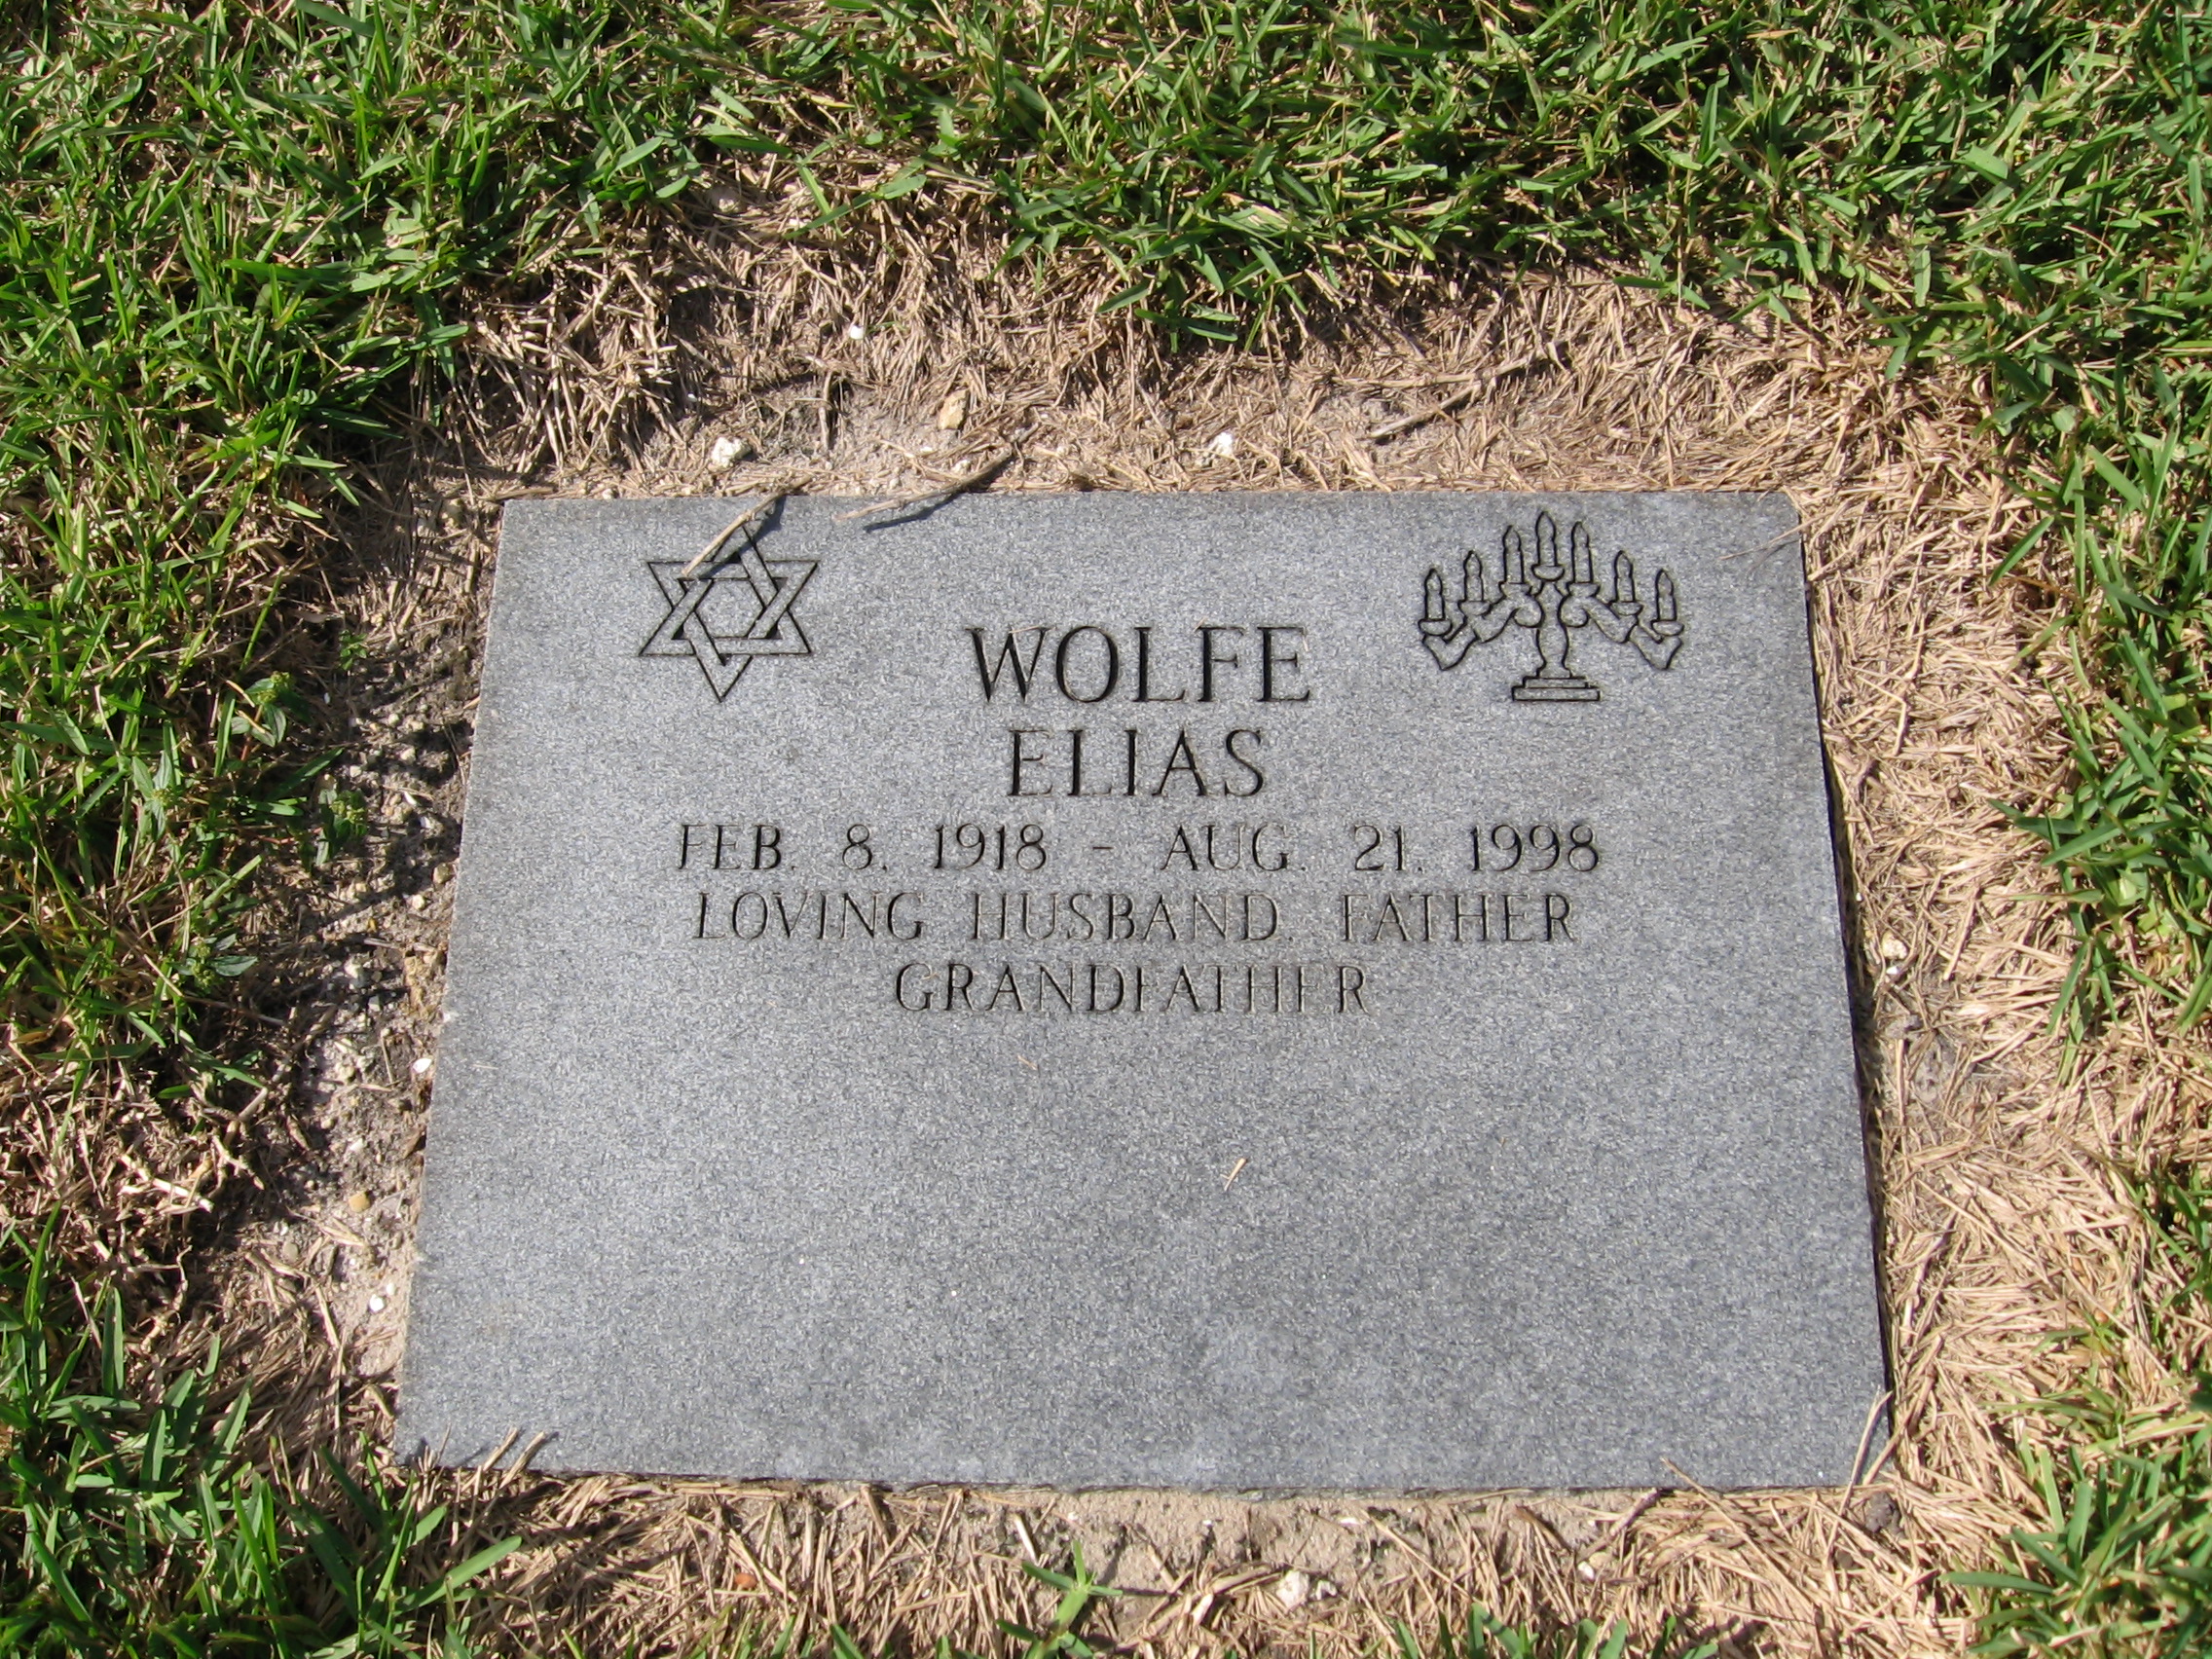 Elias Wolfe